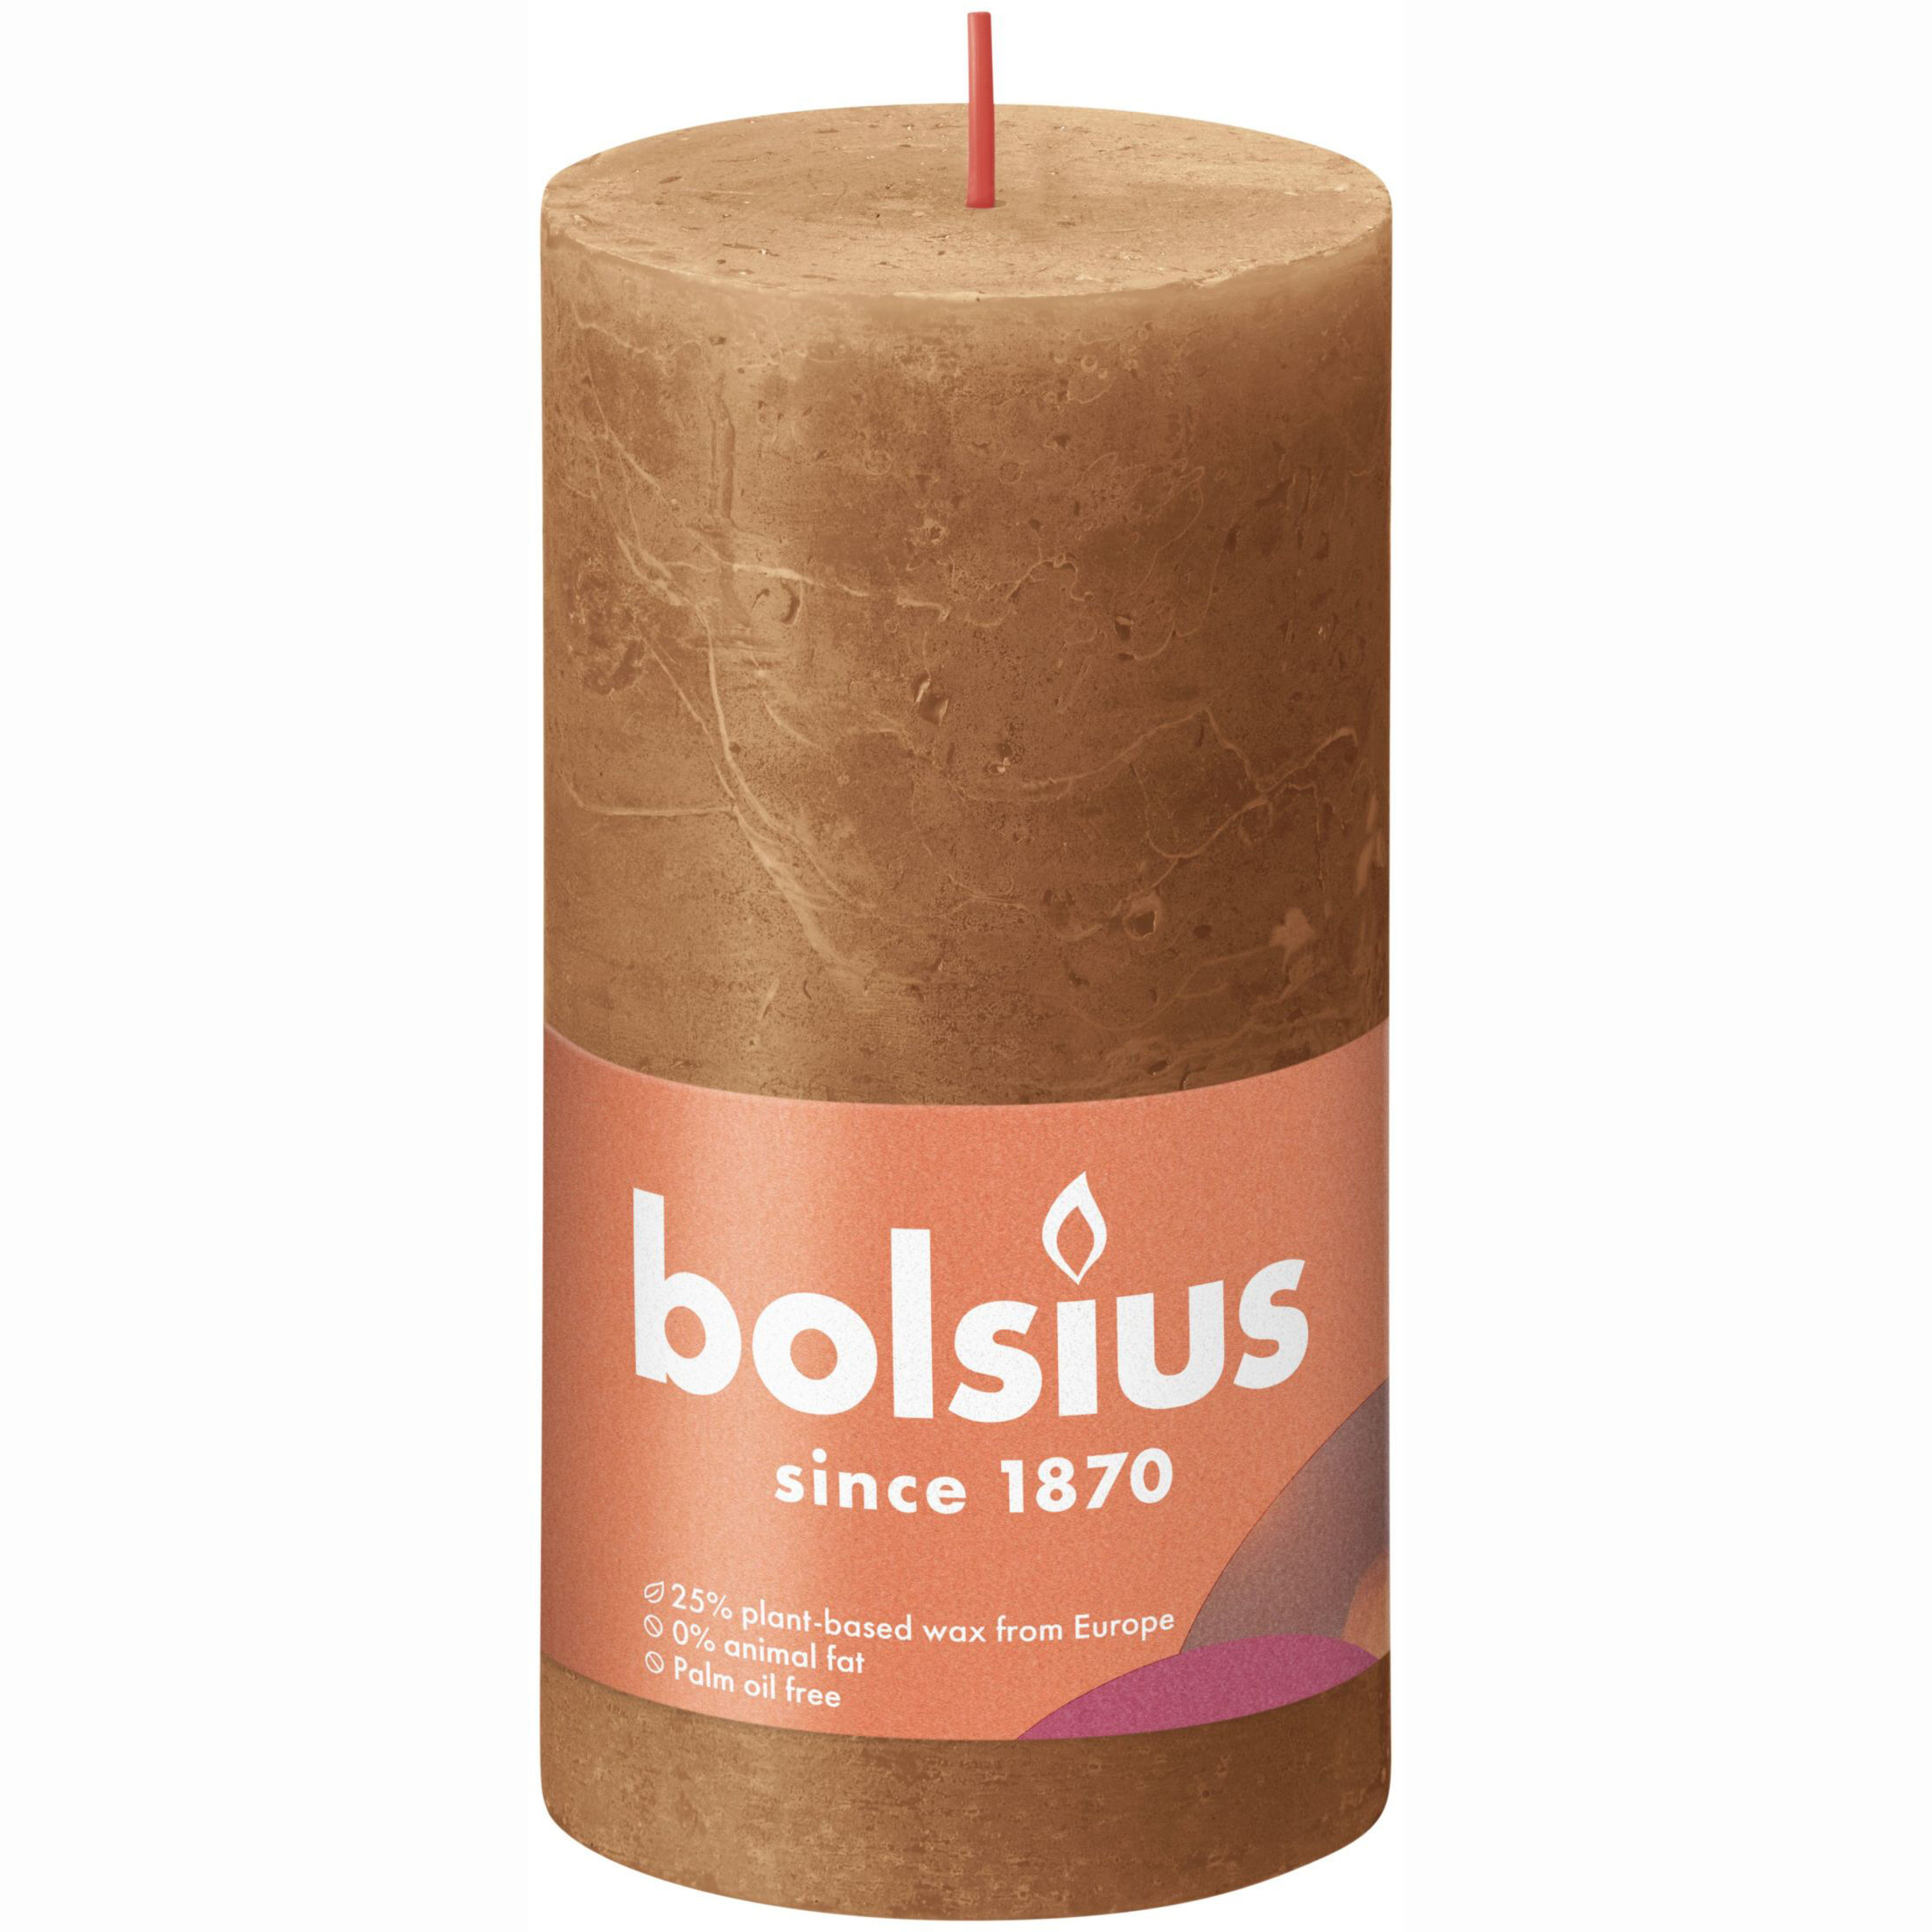 фото Свеча bolsius rustic 13х6,8 см shine пряно-коричневая